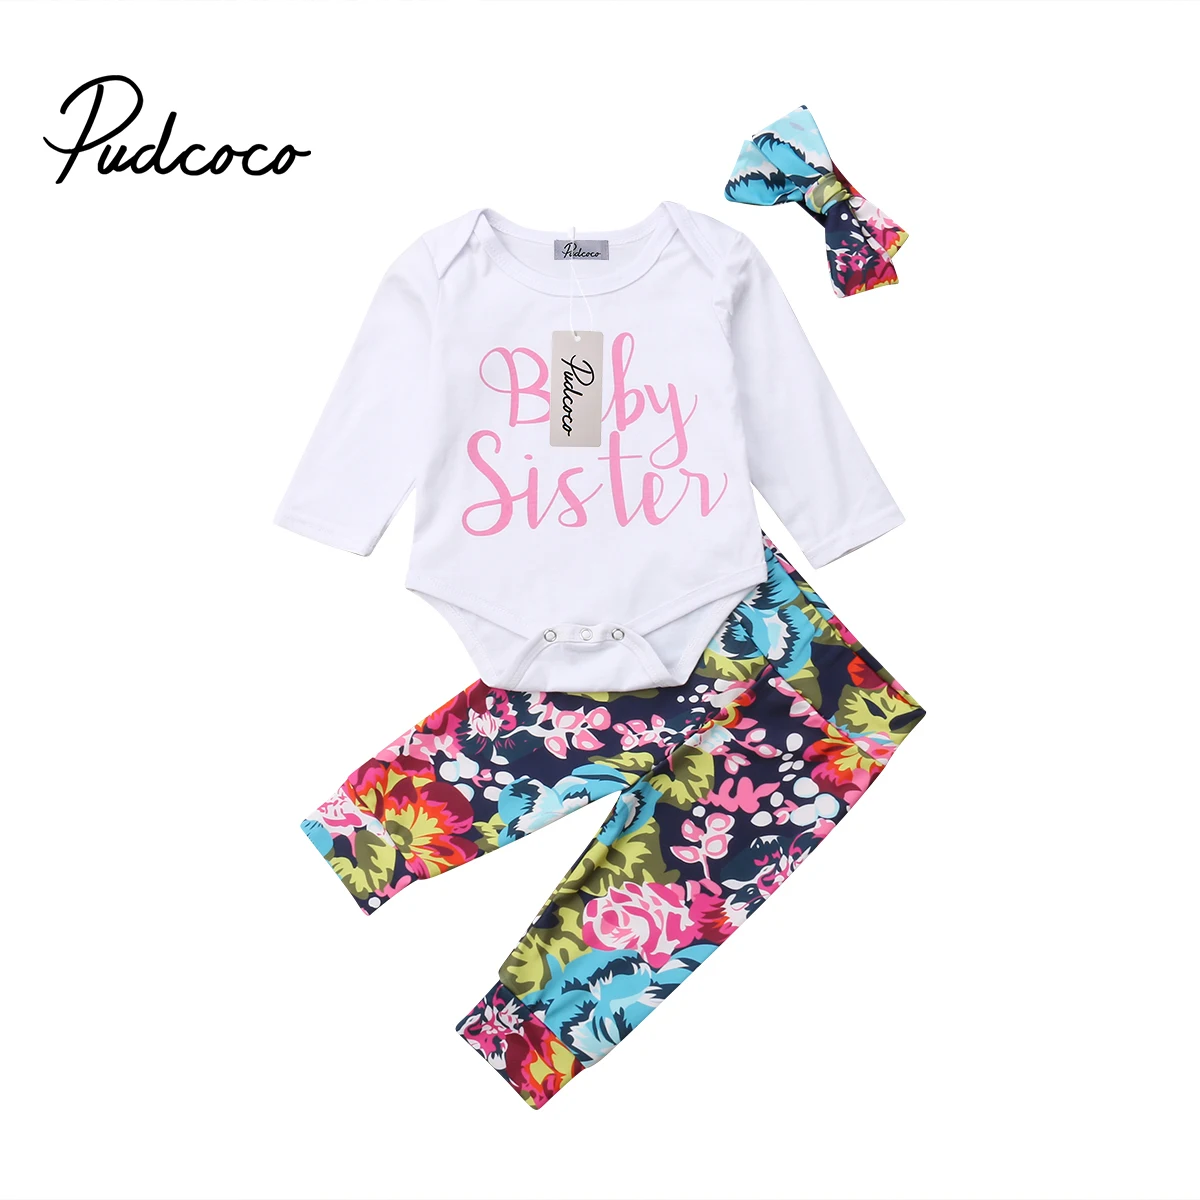 Pudcoco 2018 Новый Tollder малыш Одежда для малышей новорожденных девочек цветочные одежда комбинезон + брюки наряды милым принтом CX